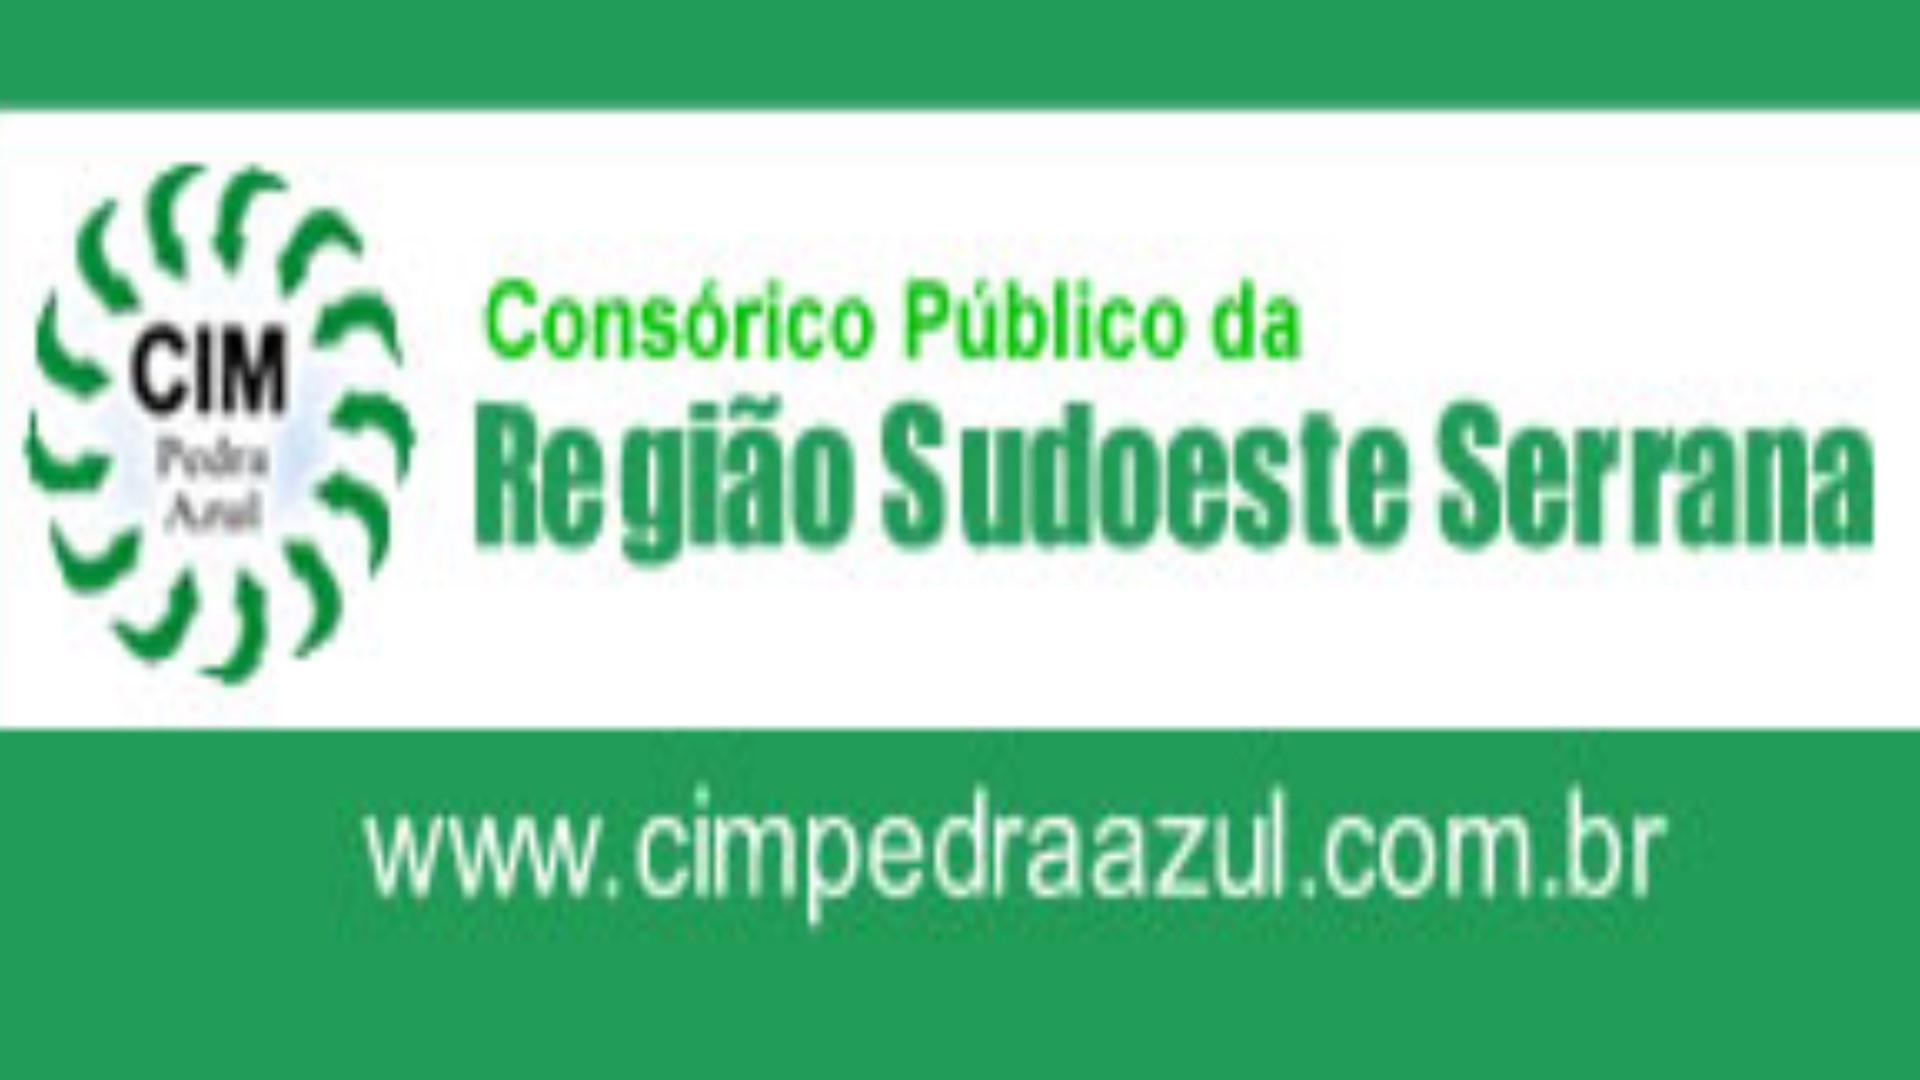 Consórcio Público da Região Sudoeste Serrana.